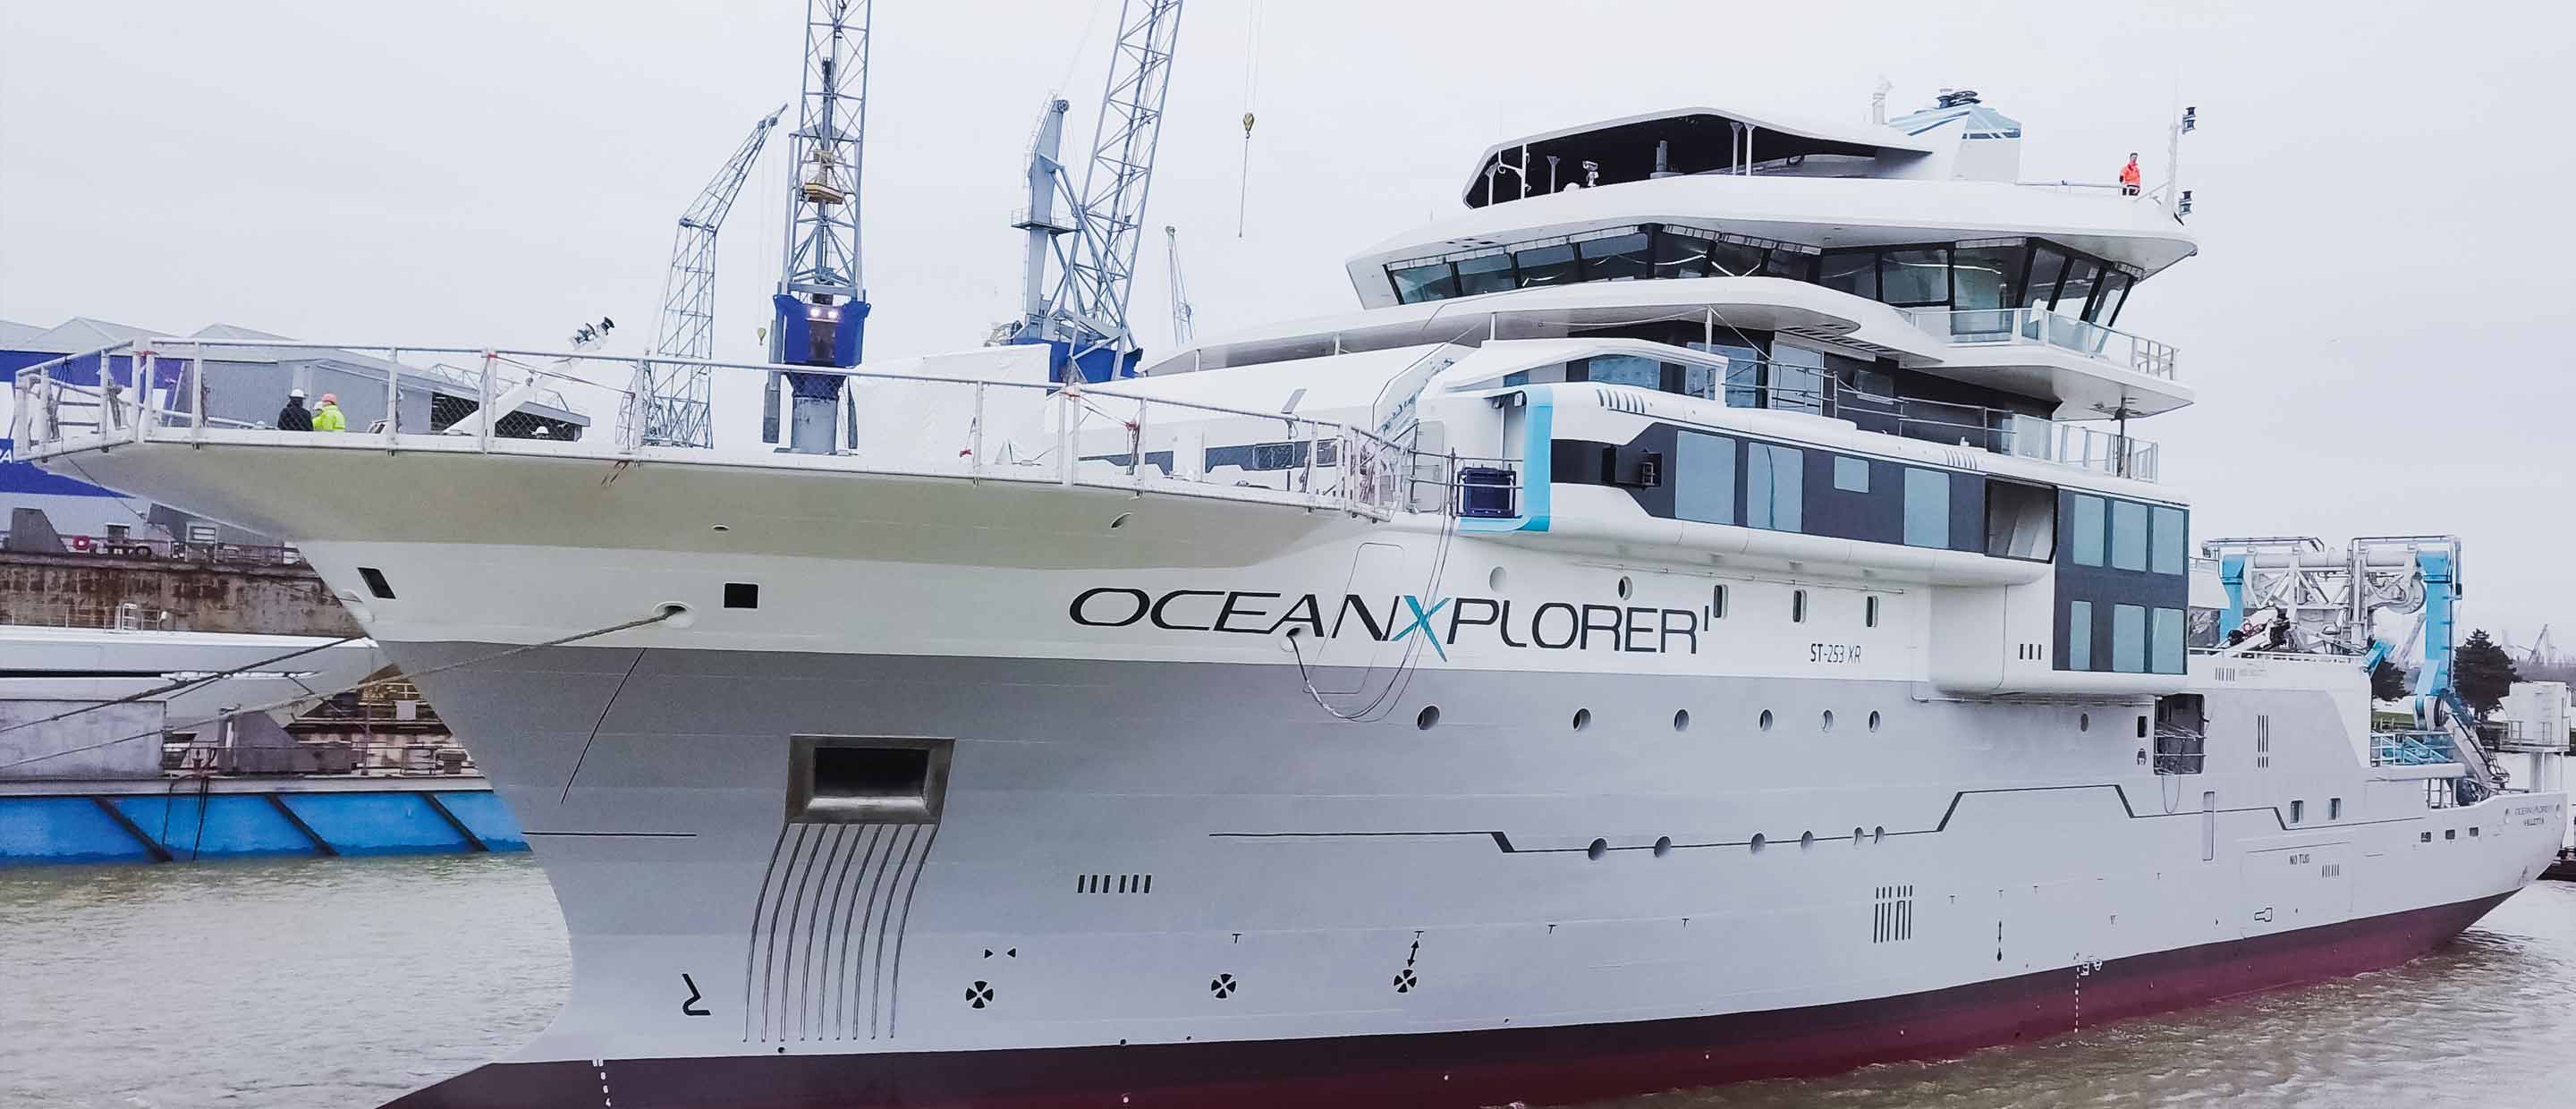 OceanX-Explorer-ship.jpg